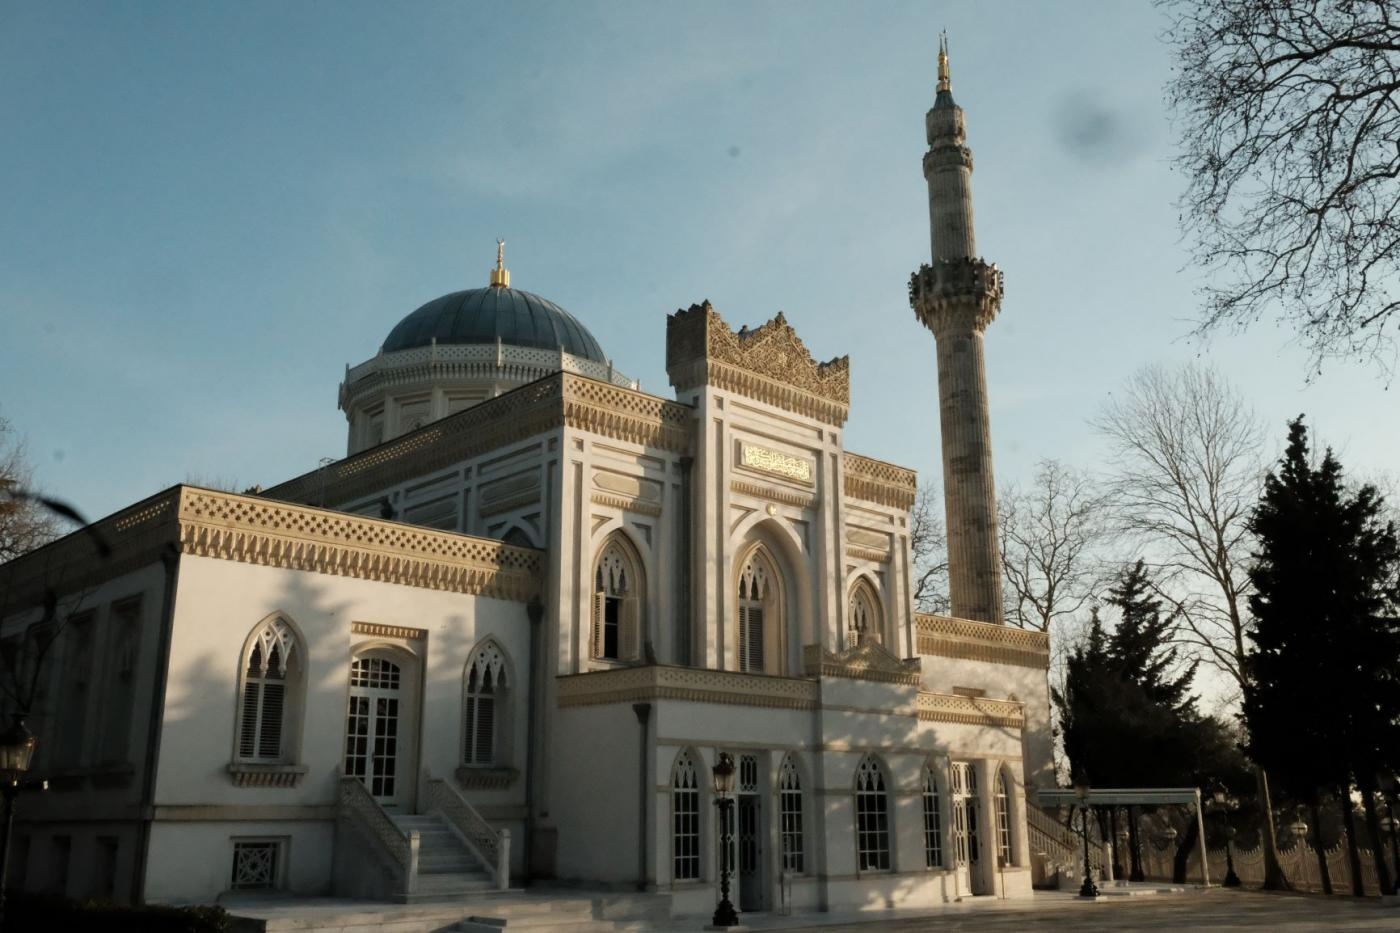 La mosquée, achevée en 1886, est d’influences néo-gothique et mauresque (MEE/Bilge Nesibe Kotan)